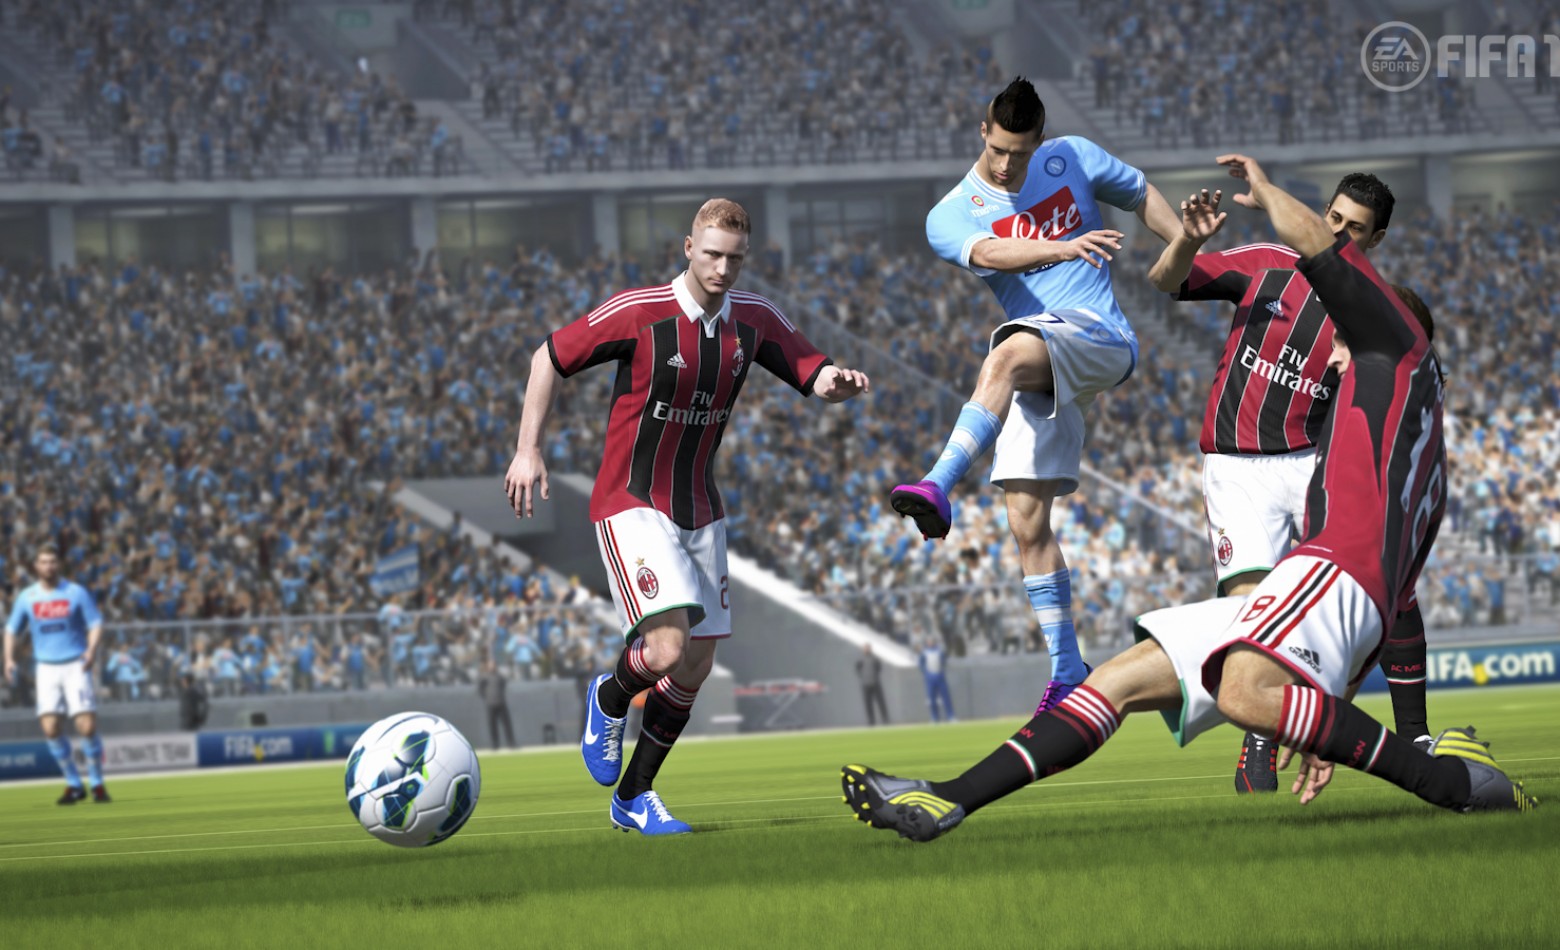 FIFA 14 continua firme em vendas na PSN brasileira